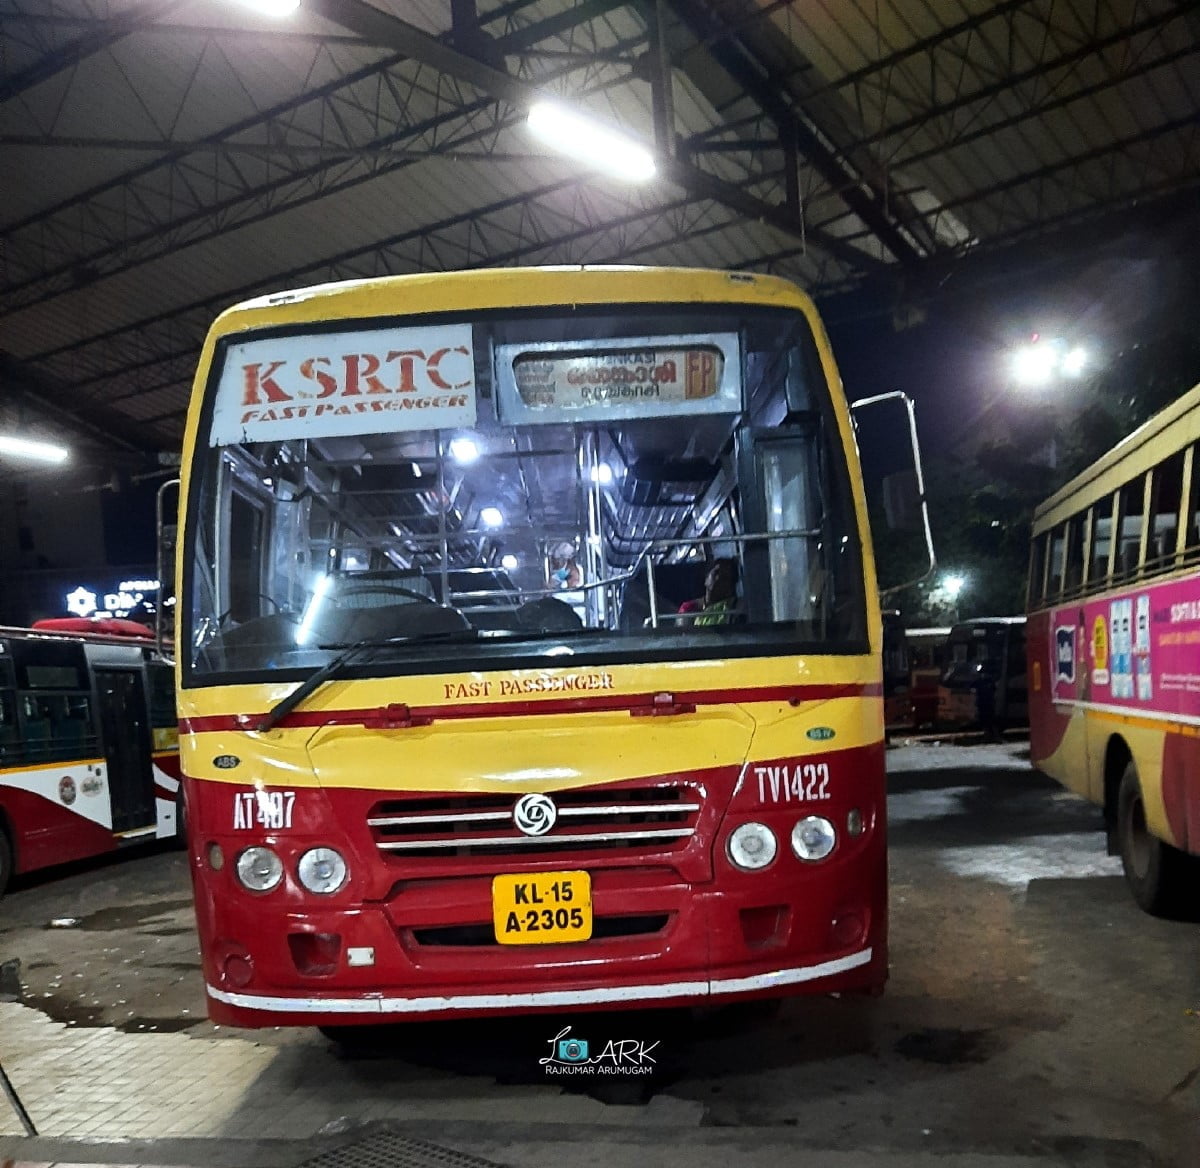 KSRTC AT 487 Thiruvananthapuram - Tenkasi Bus Timings